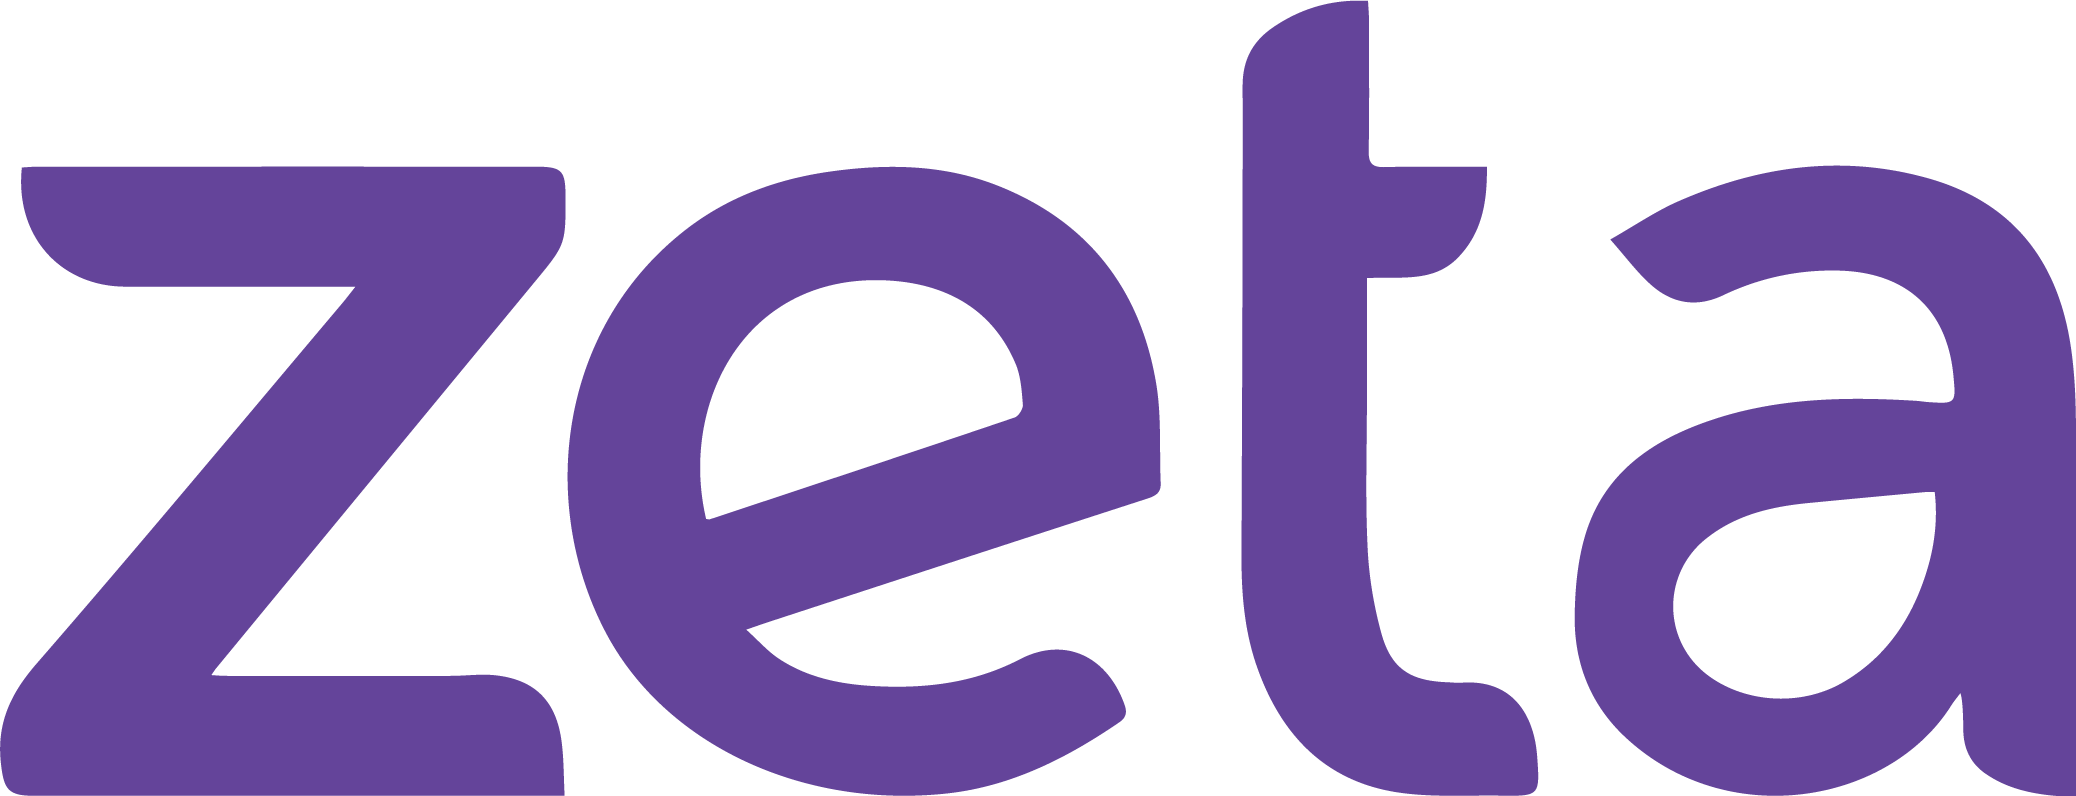 Zeta Company Logo